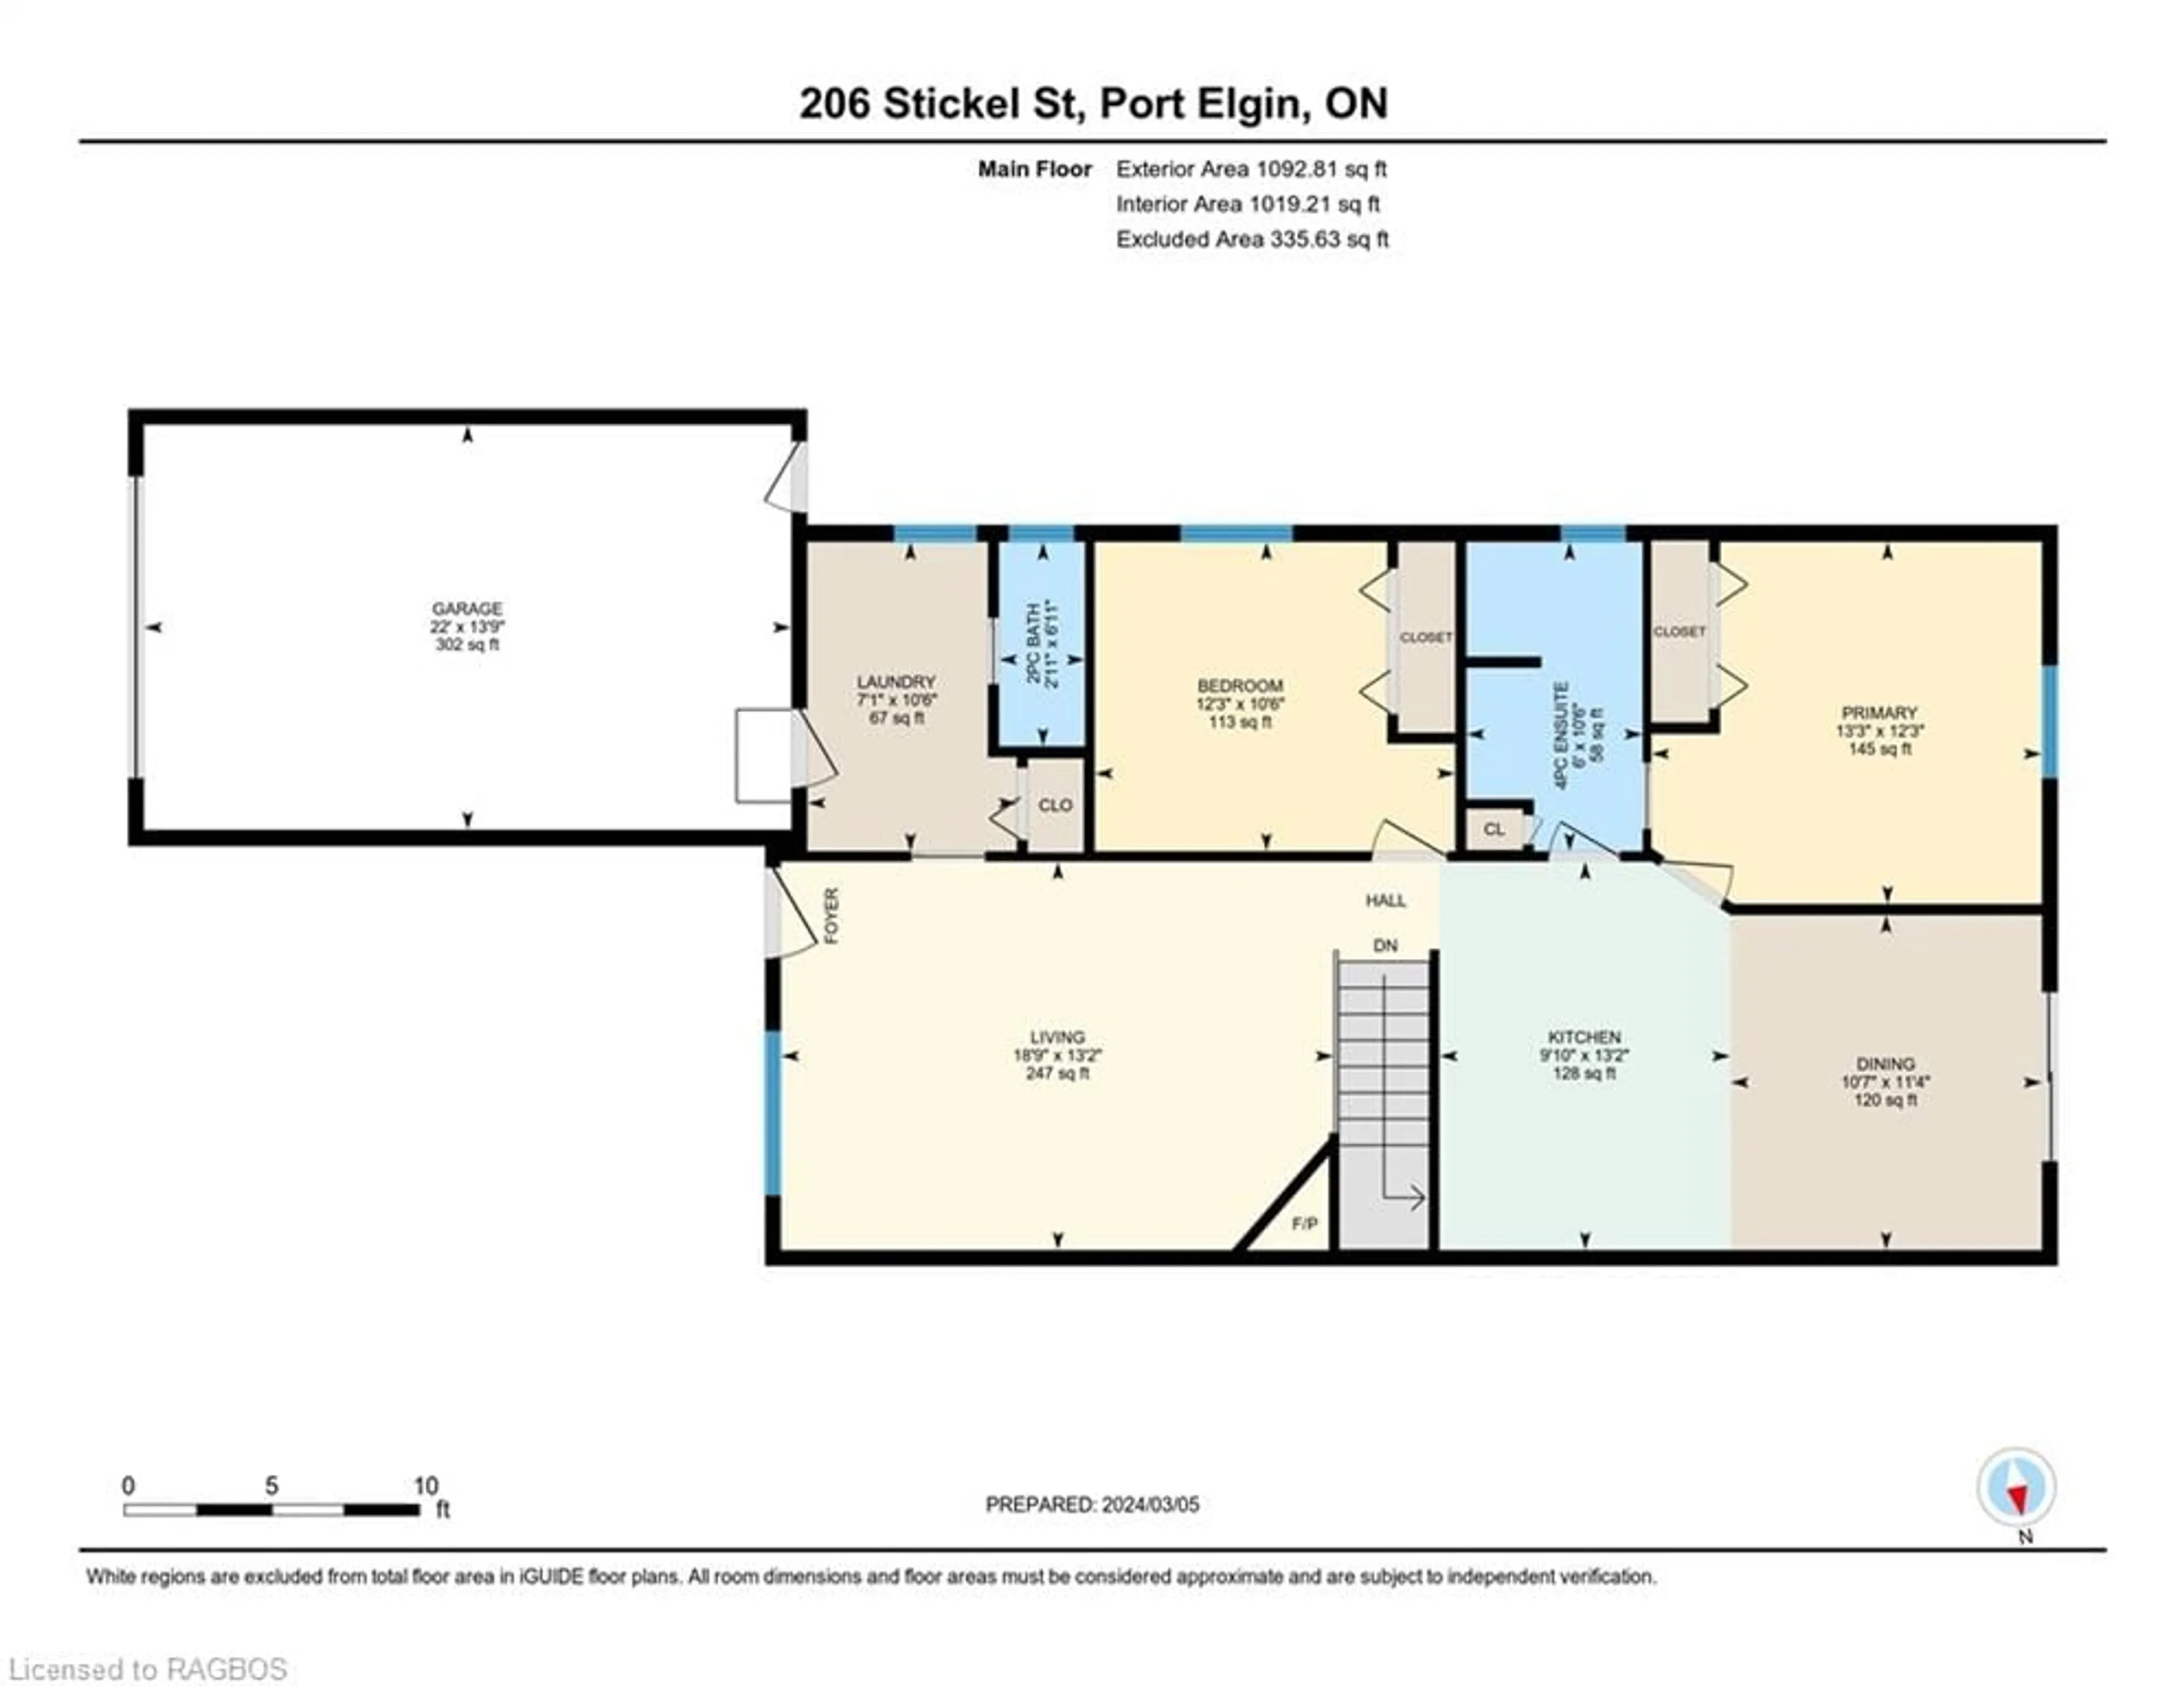 Floor plan for 206 Stickel St, Port Elgin Ontario N0H 2C1